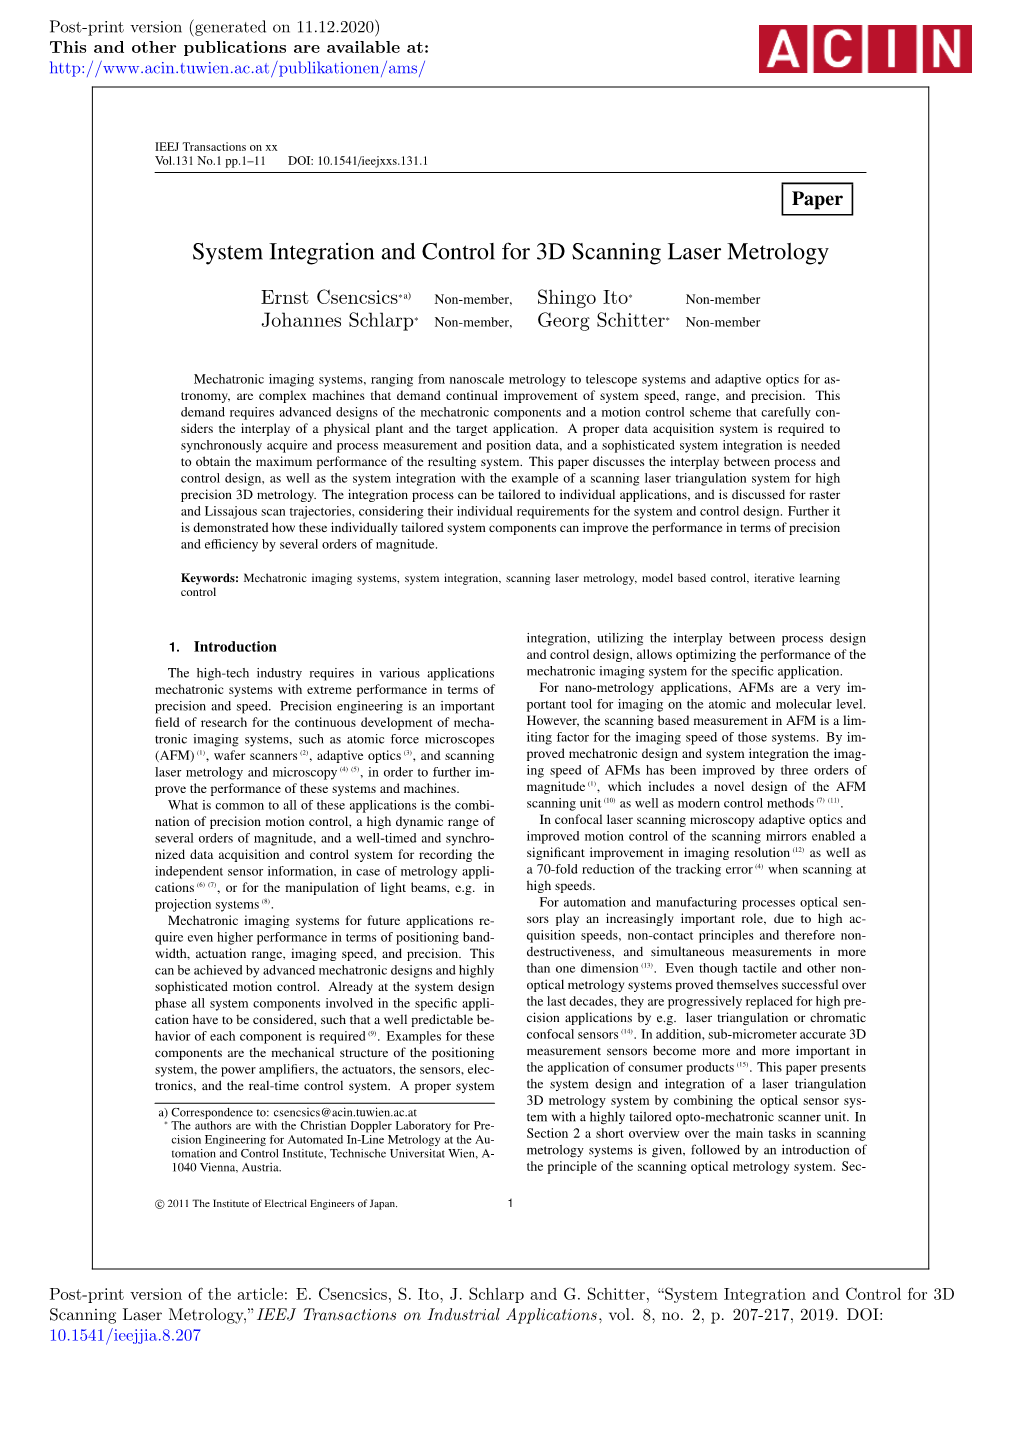 System Integration and Control for 3D Scanning Laser Metrology